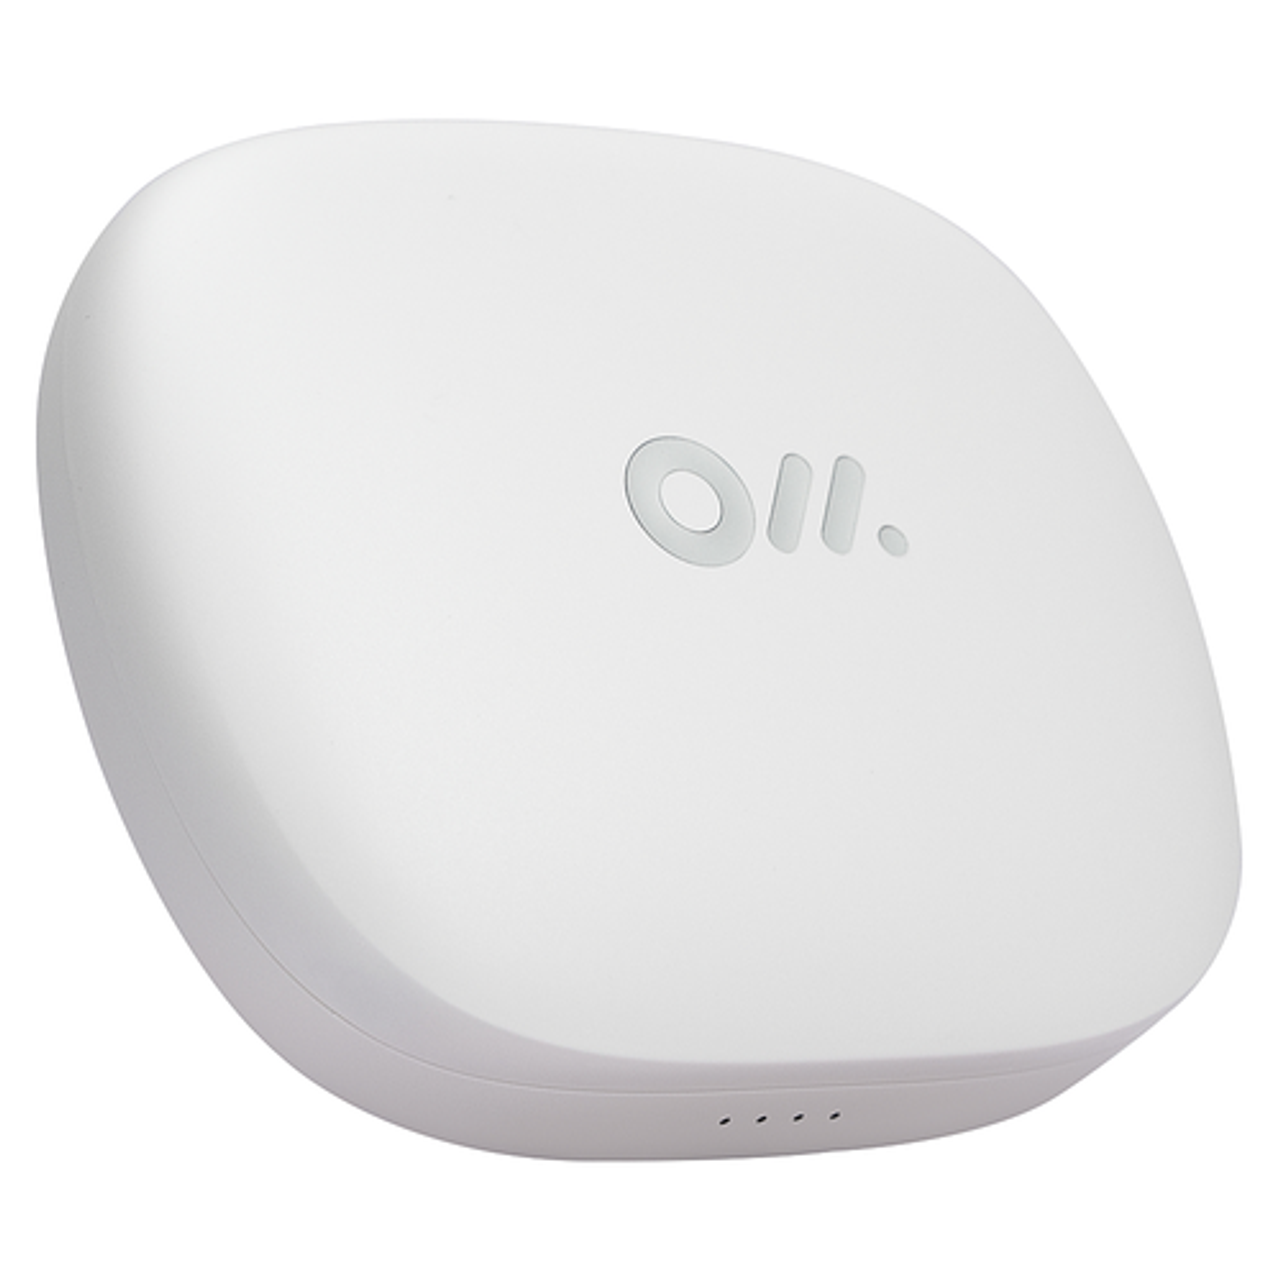 Oladance - OWS Pro Wearable Stereo True Wireless Open Ear Headphones - Porcelain White